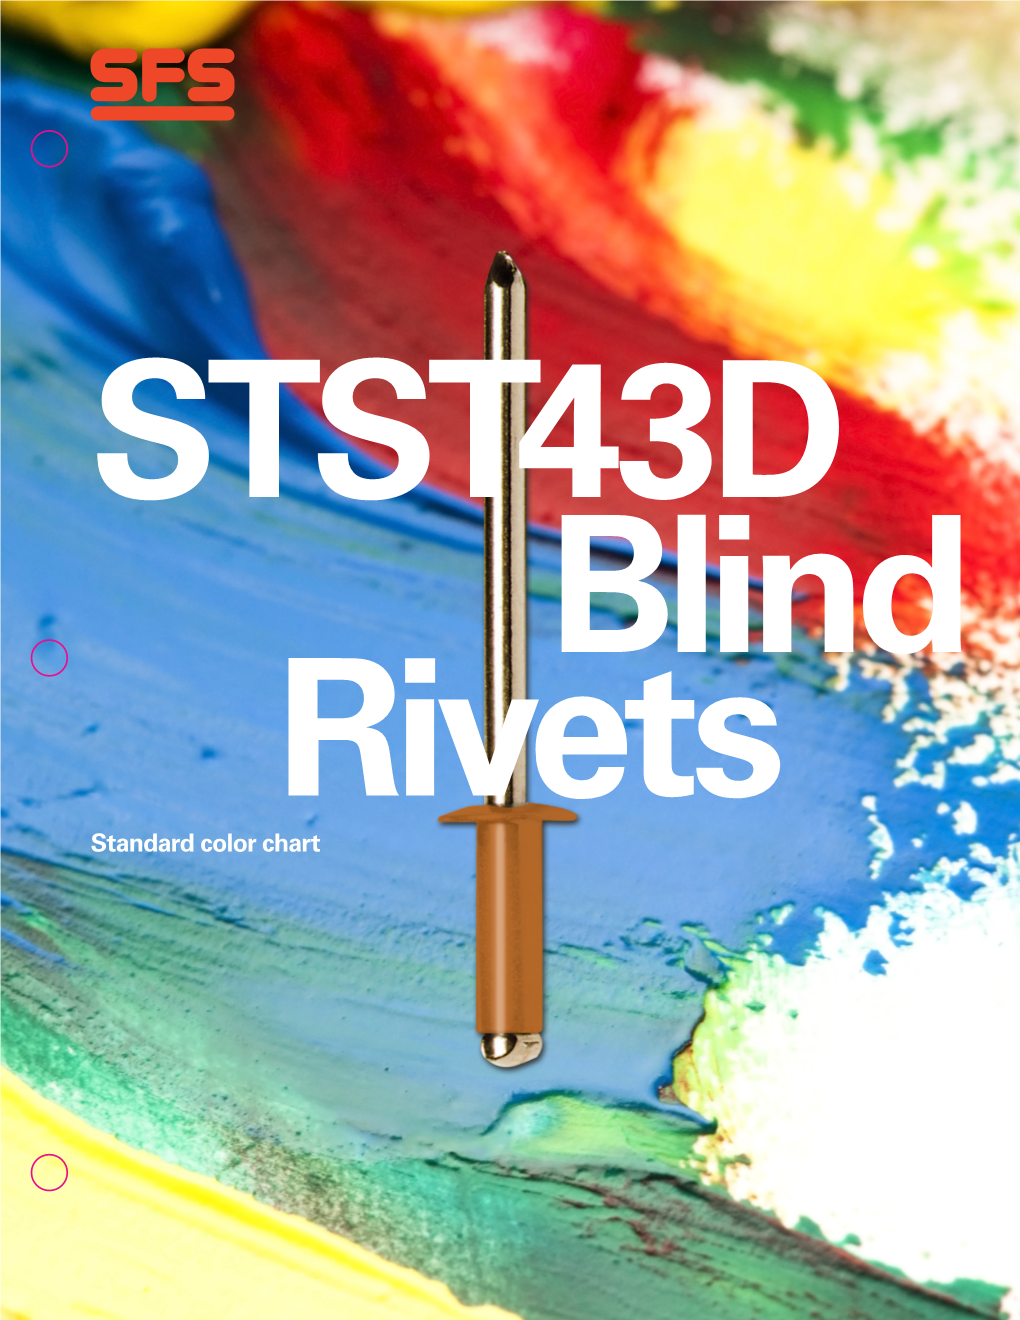 STST43D Blind Rivet Color Chart